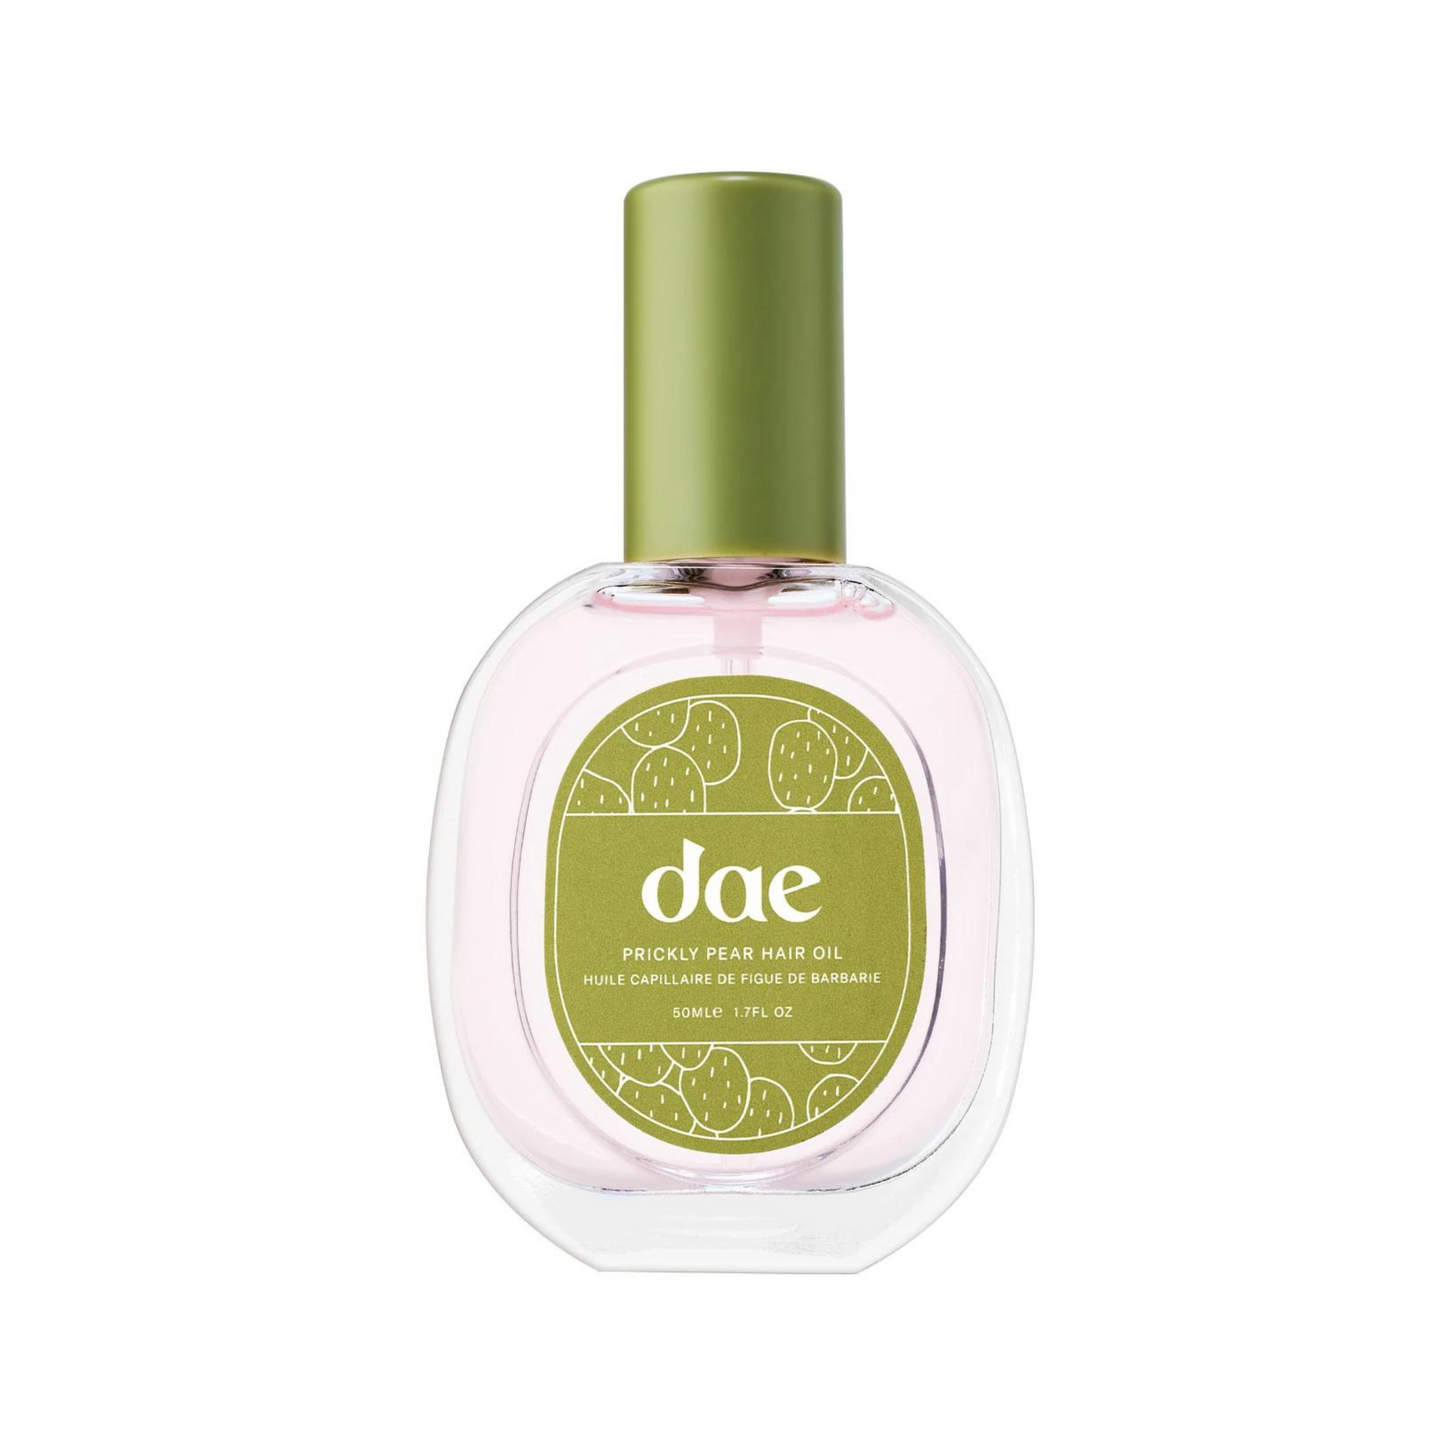 DAE - Prickly Pear Hair Oil